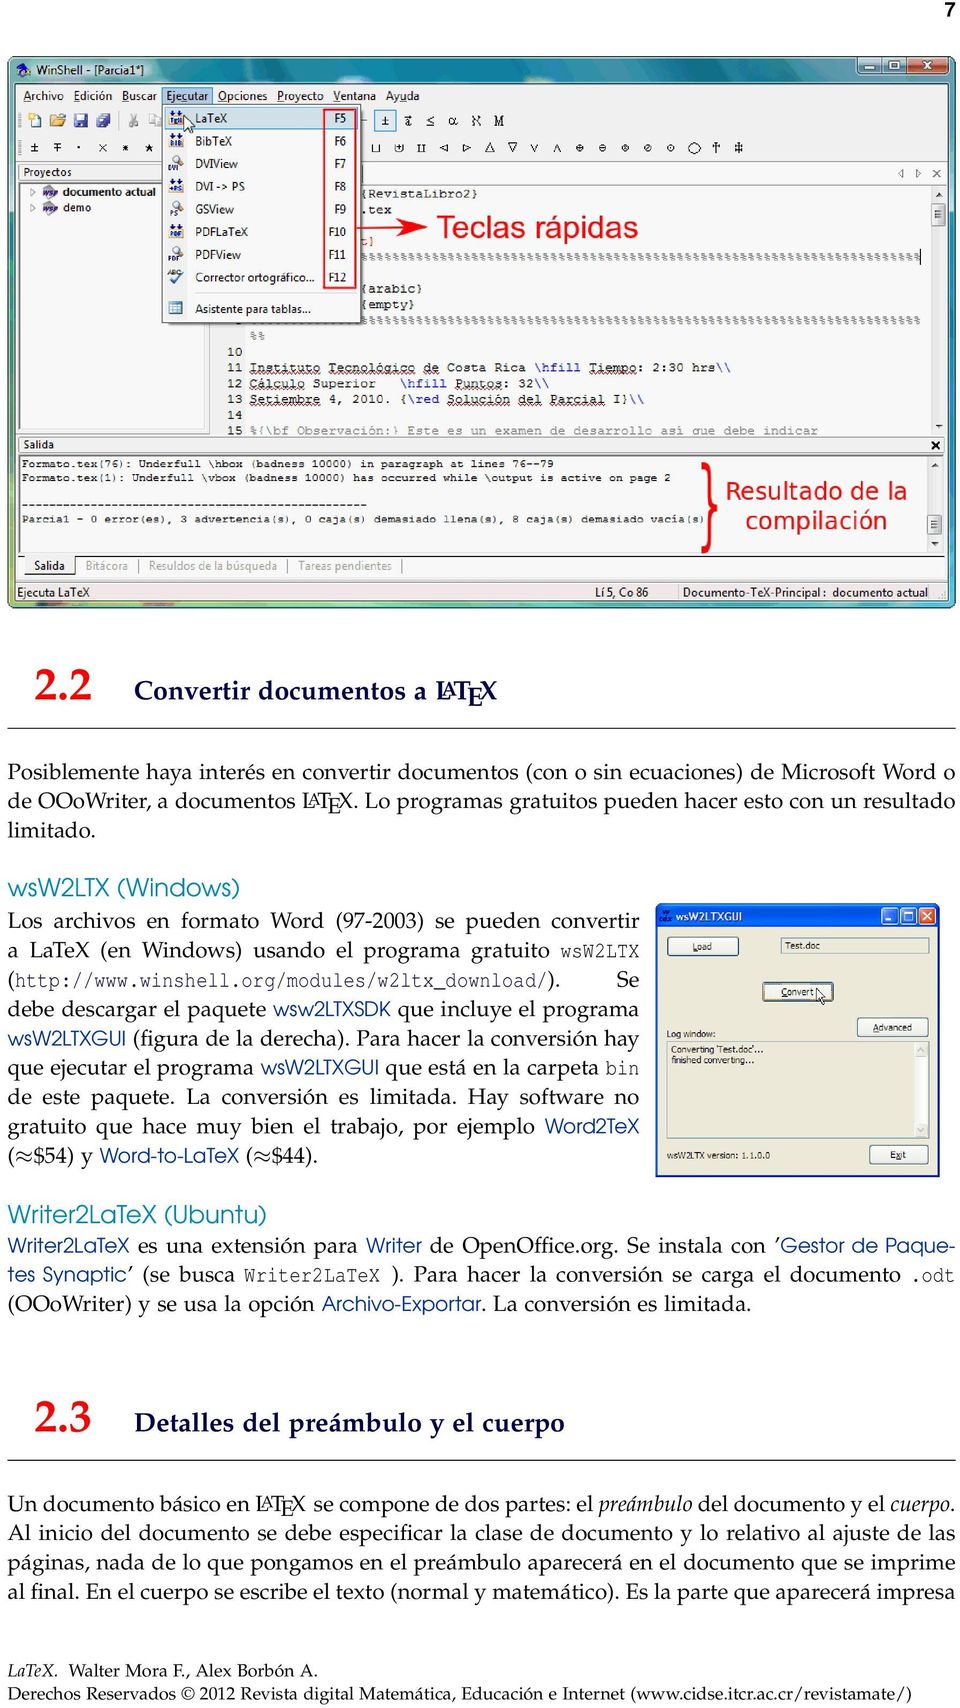 wsw2ltx (Windows) Los archivos en formato Word (97-2003) se pueden convertir a LaTeX (en Windows) usando el programa gratuito wsw2ltx (http://www.winshell.org/modules/w2ltx_download/).